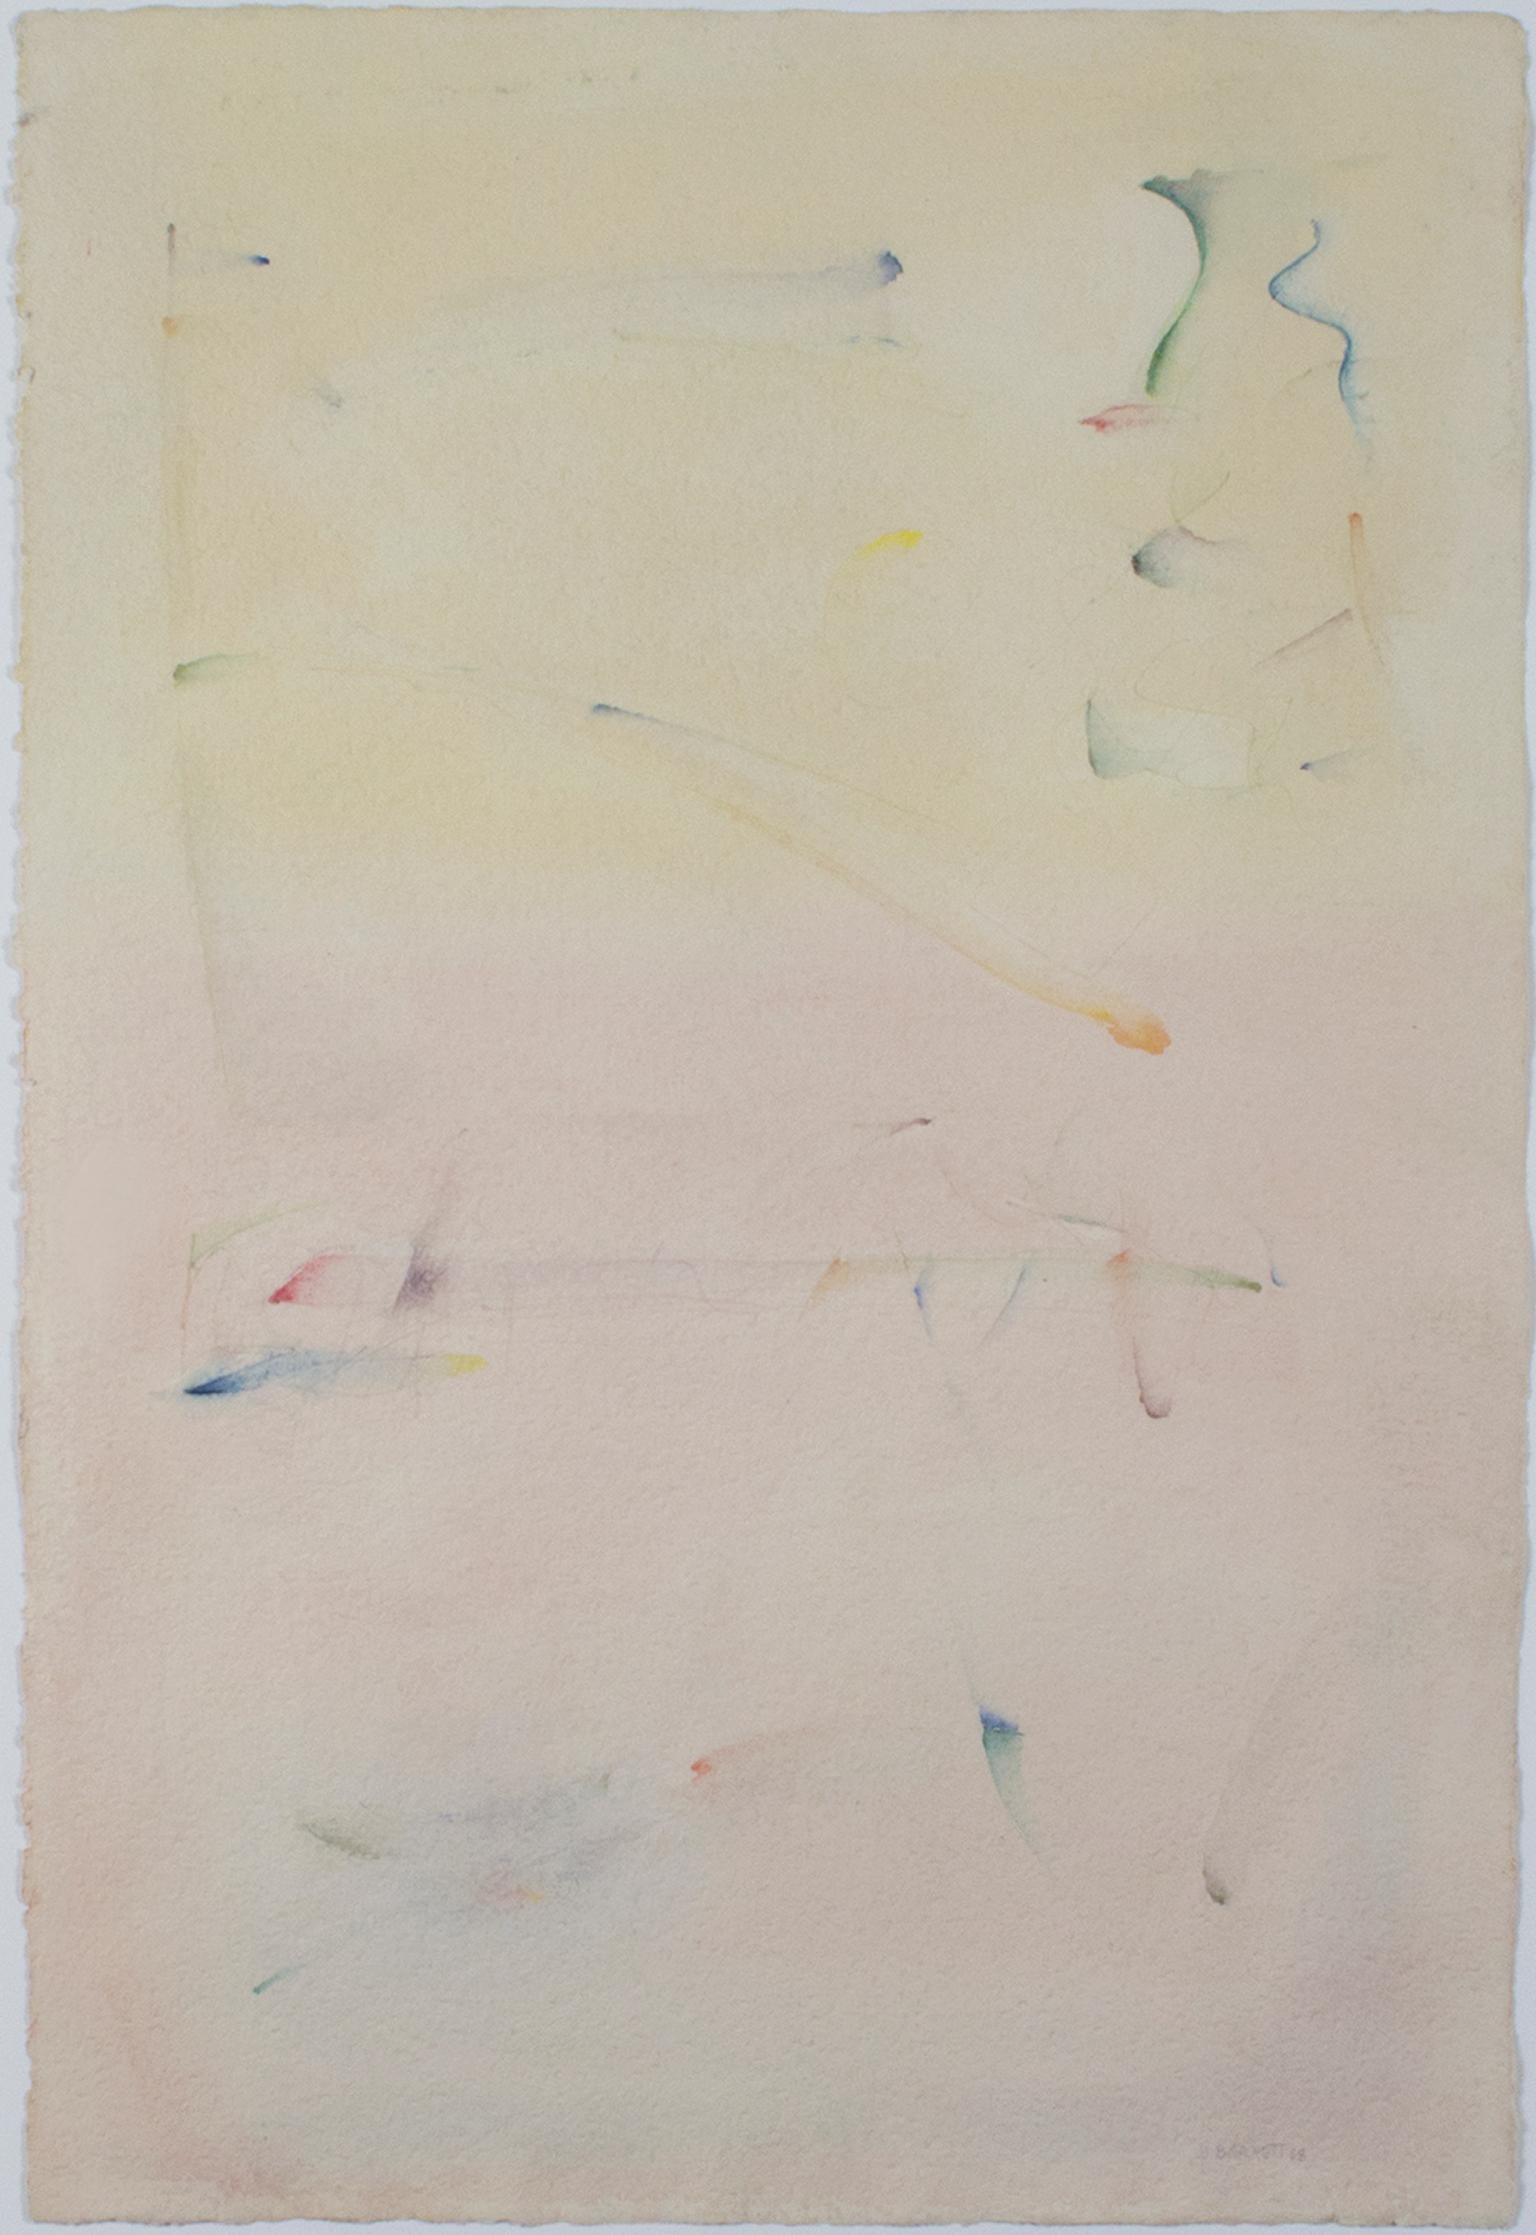 "Land, Sea & Sky" ist ein Original-Aquarell von David Barnett, signiert unten rechts. Dieses gestische, abstrakte Werk zeigt zwei leicht verwaschene Farbfelder: Gelb oben und Orange unten. Die Seite ist gefüllt mit spontanen kleinen Pinselstrichen